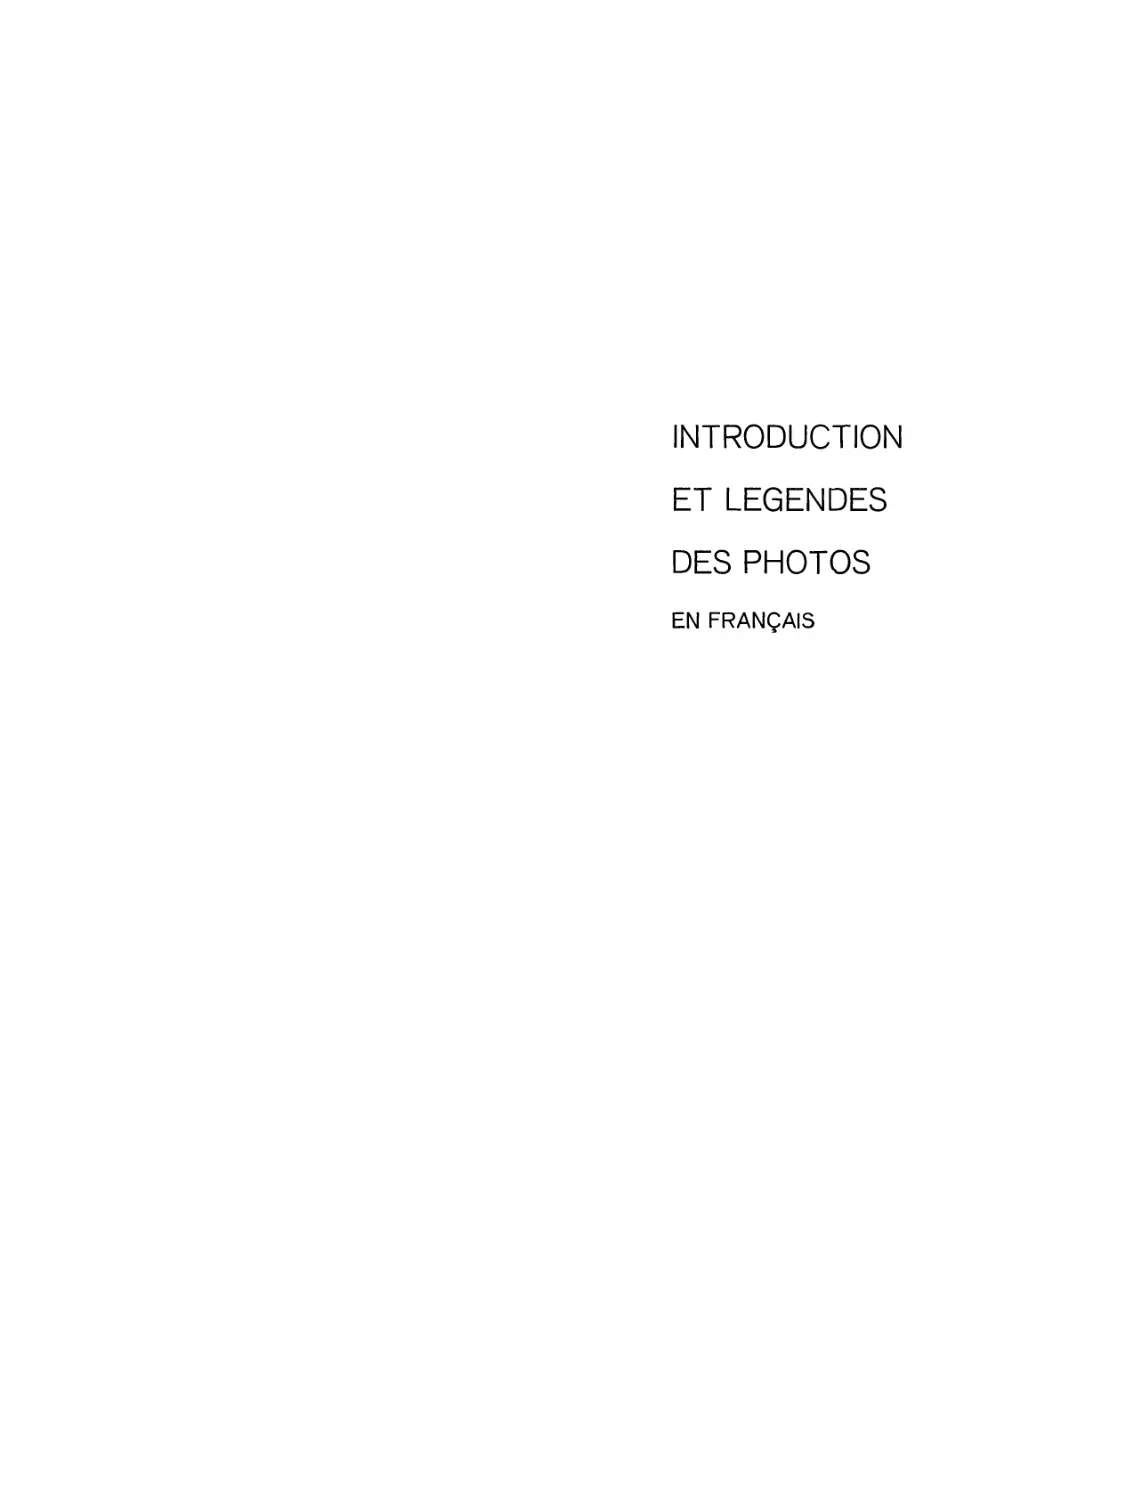 INTRODUCTION  ET  LEGENDES  DES  PHOTOS  EN  FRANÇAIS. Traduit  par  A.Sokolov